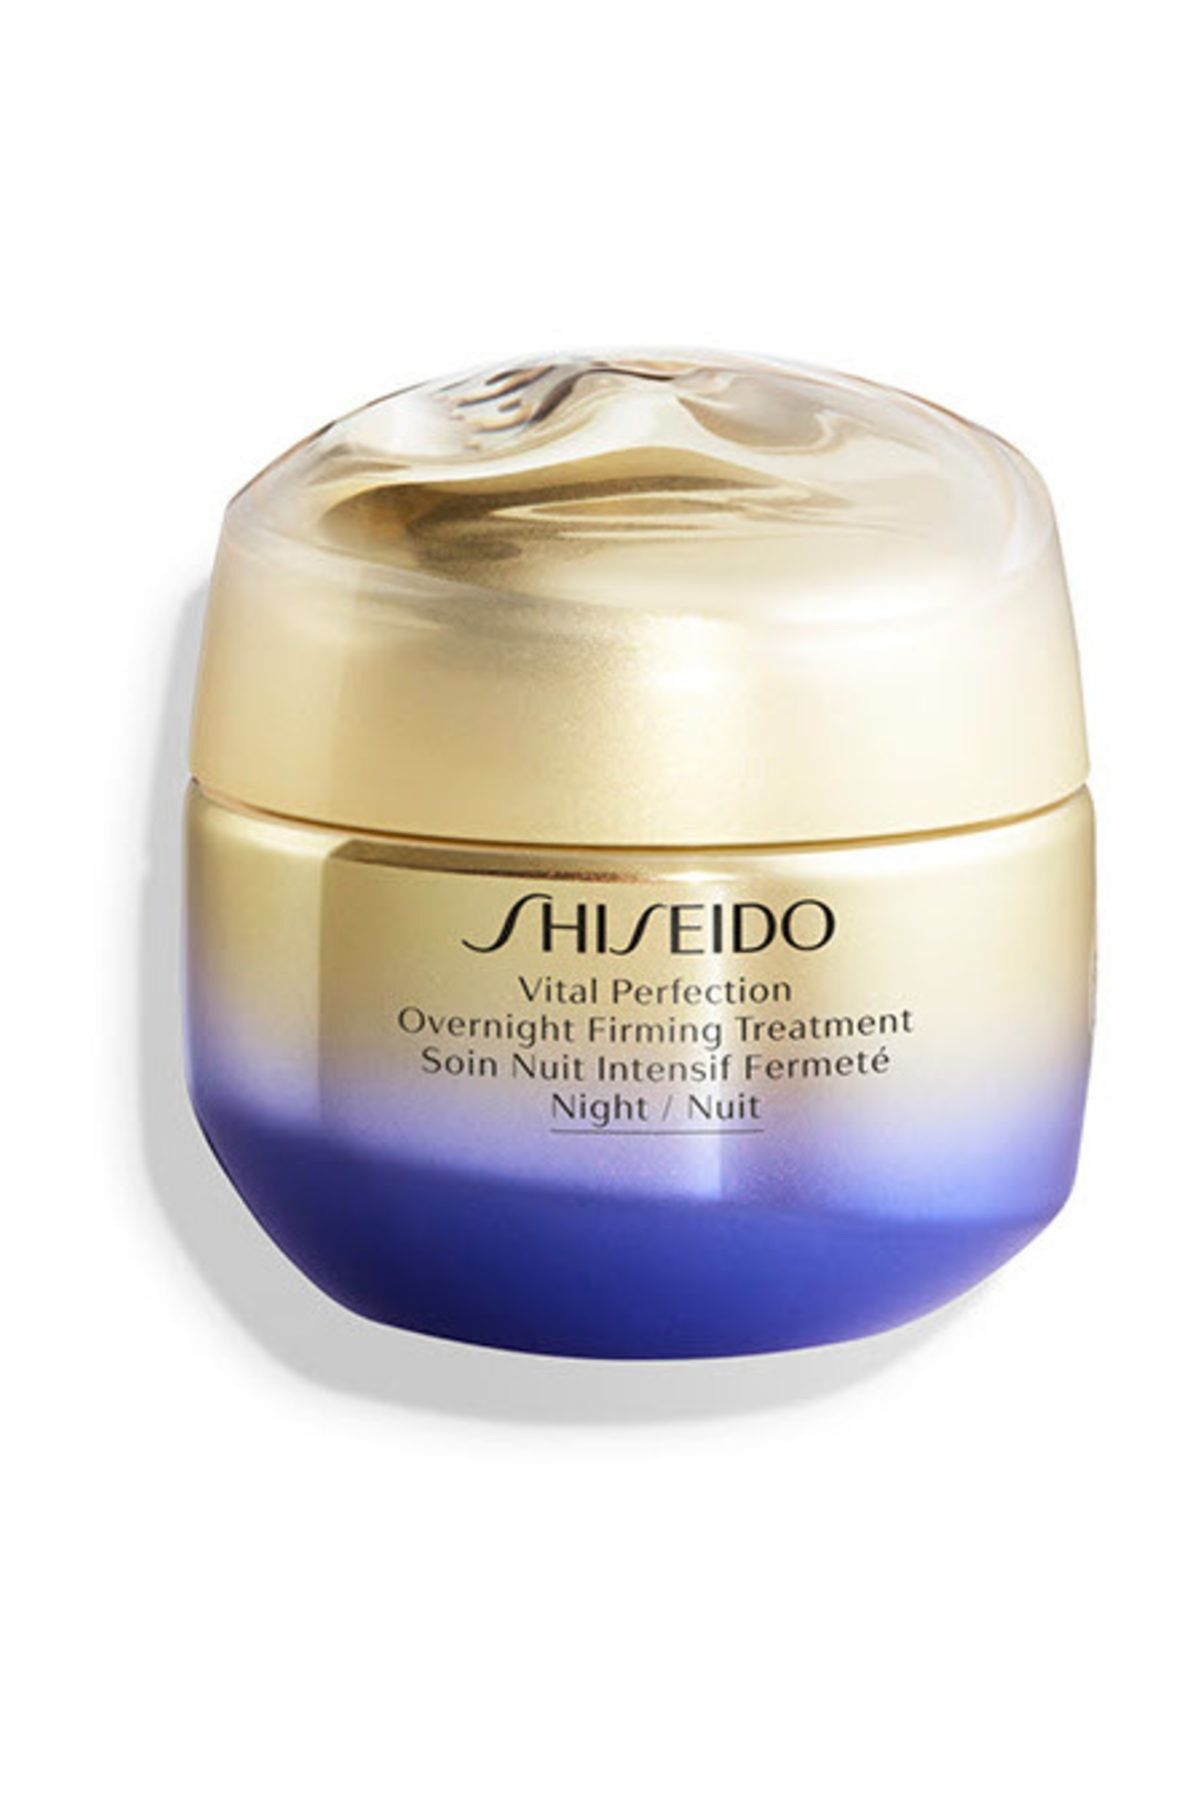 Shiseido Cildi Sıkılaştıran ve Toparlayan Gece Kremi - VPN Overnight Firming Treatment 50 ml 768614149415